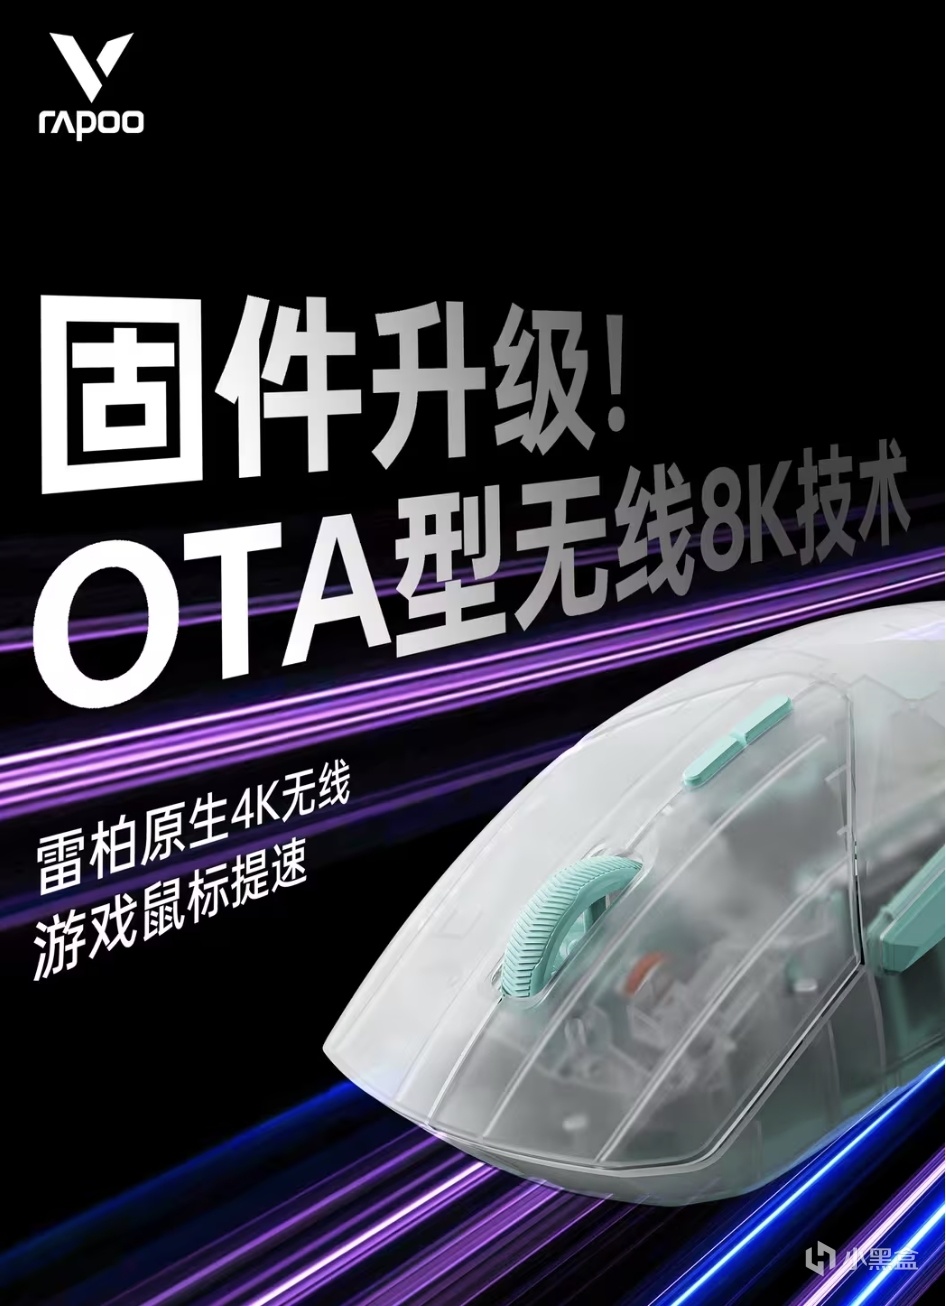 VT9系列迎来最大的一次更新，OTA升级驱动，有线无线均支持8K